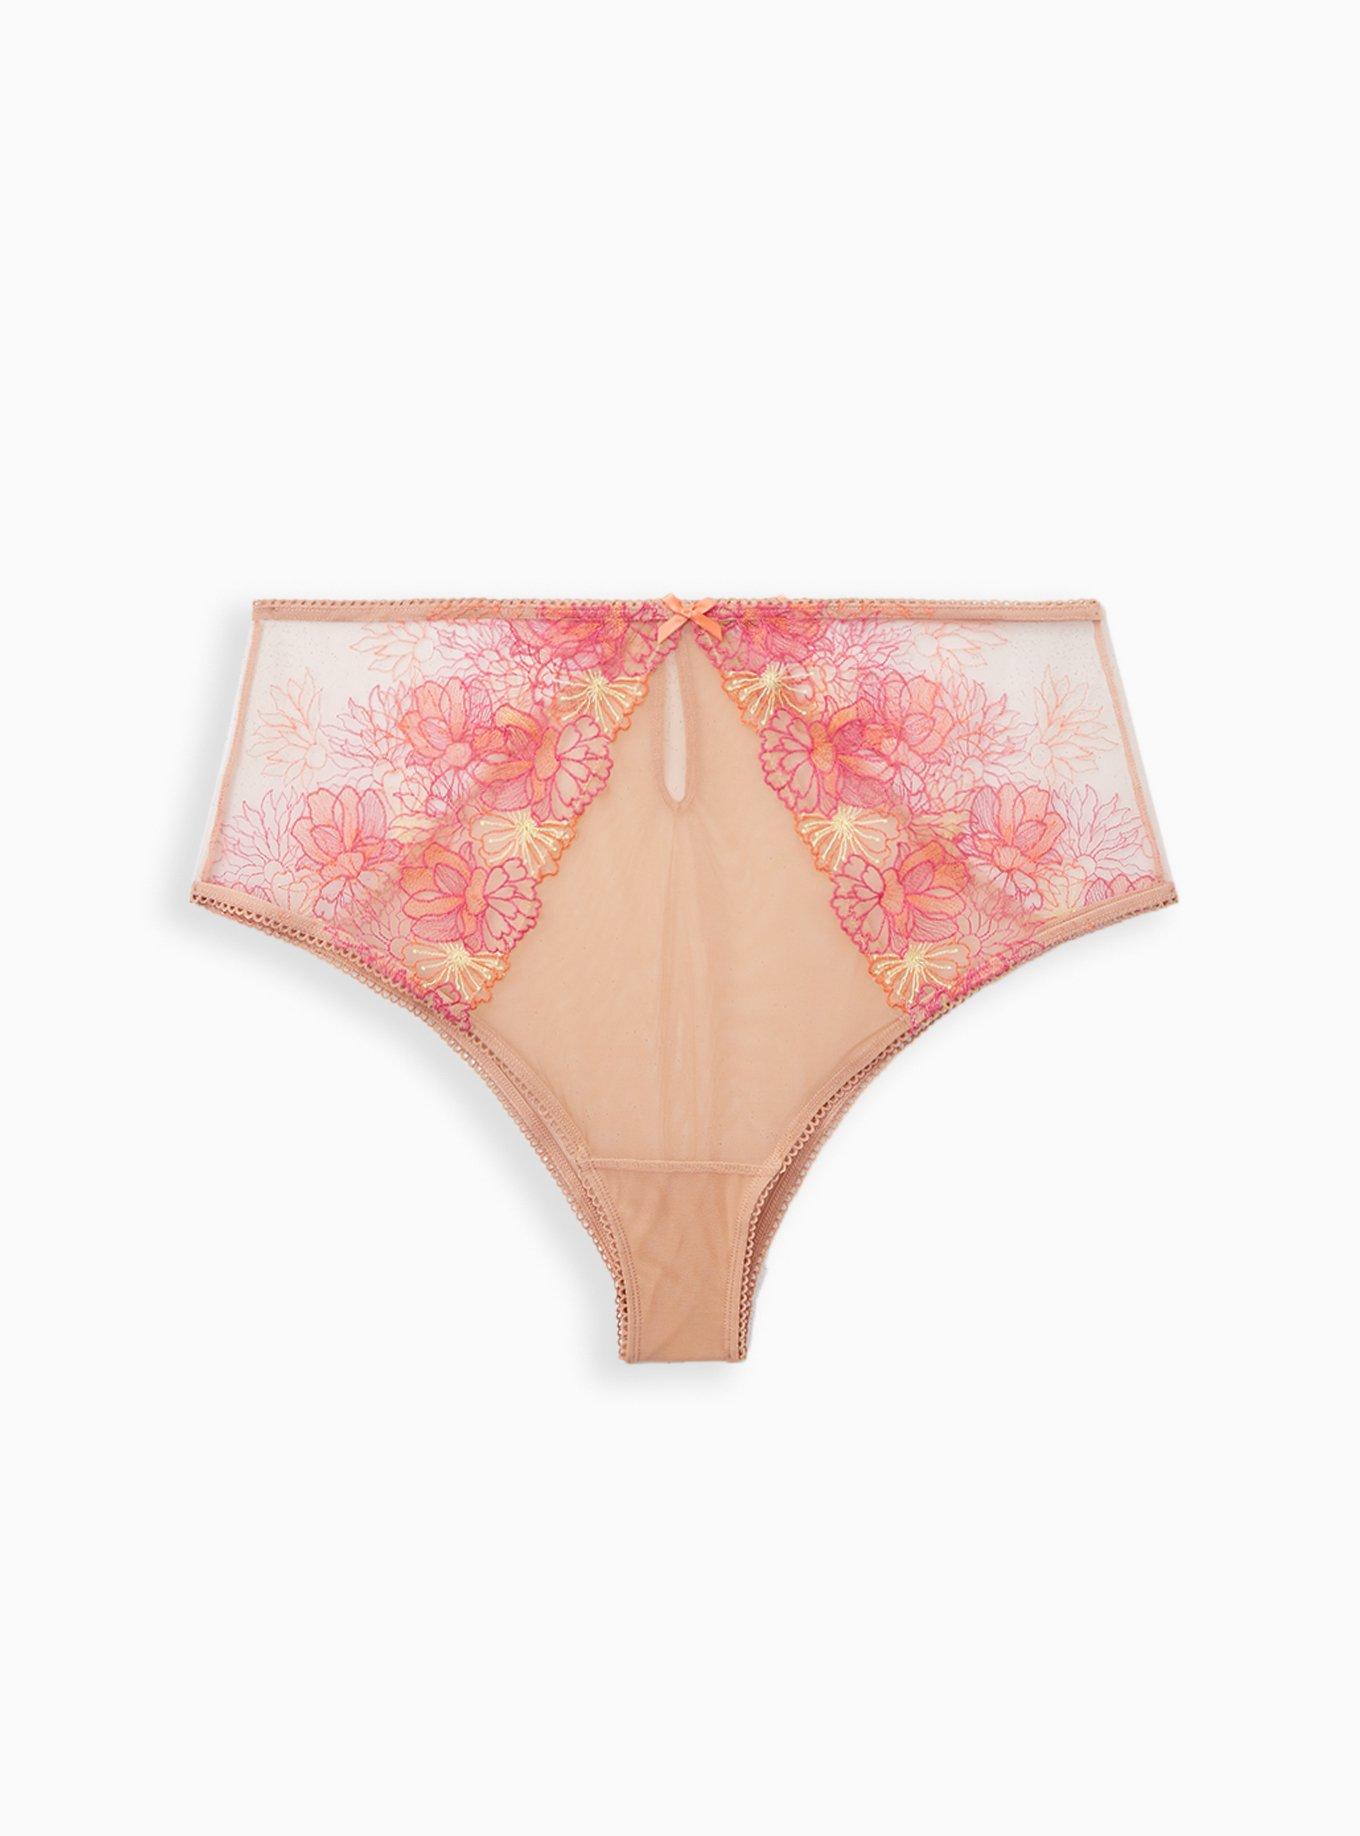 Torrid Hipster Panties Black Floral 💛 Pink Lace Ladies Plus Underwear NWT  2 2x